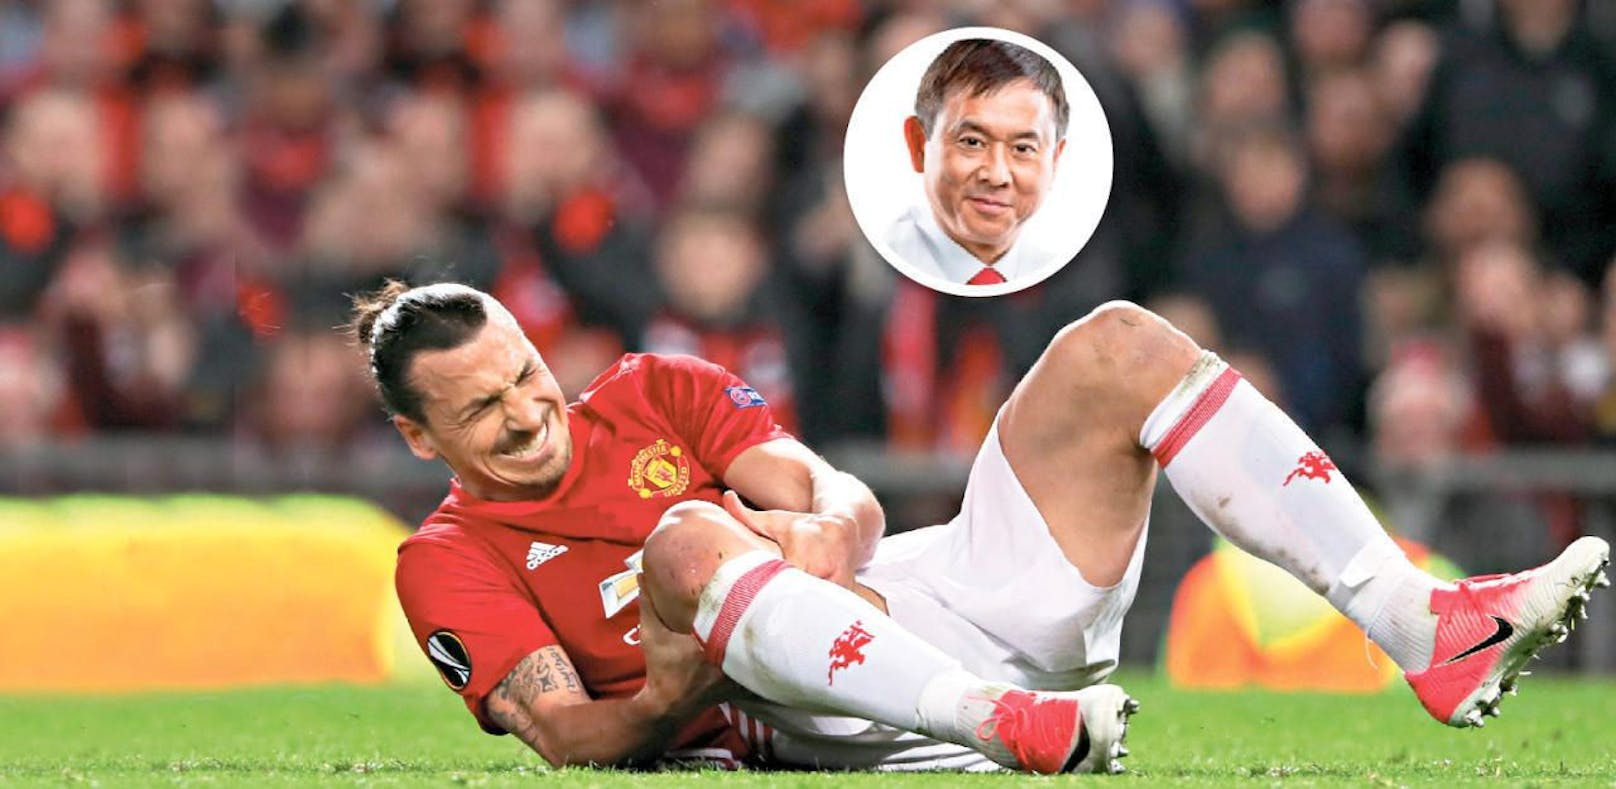 Der Knie-Spezialist Doktor Fu aus den USA schwärmt: In 20 Jahren hat er noch nie so ein starkes Knie gesehen wie bei Ibrahimovic. 